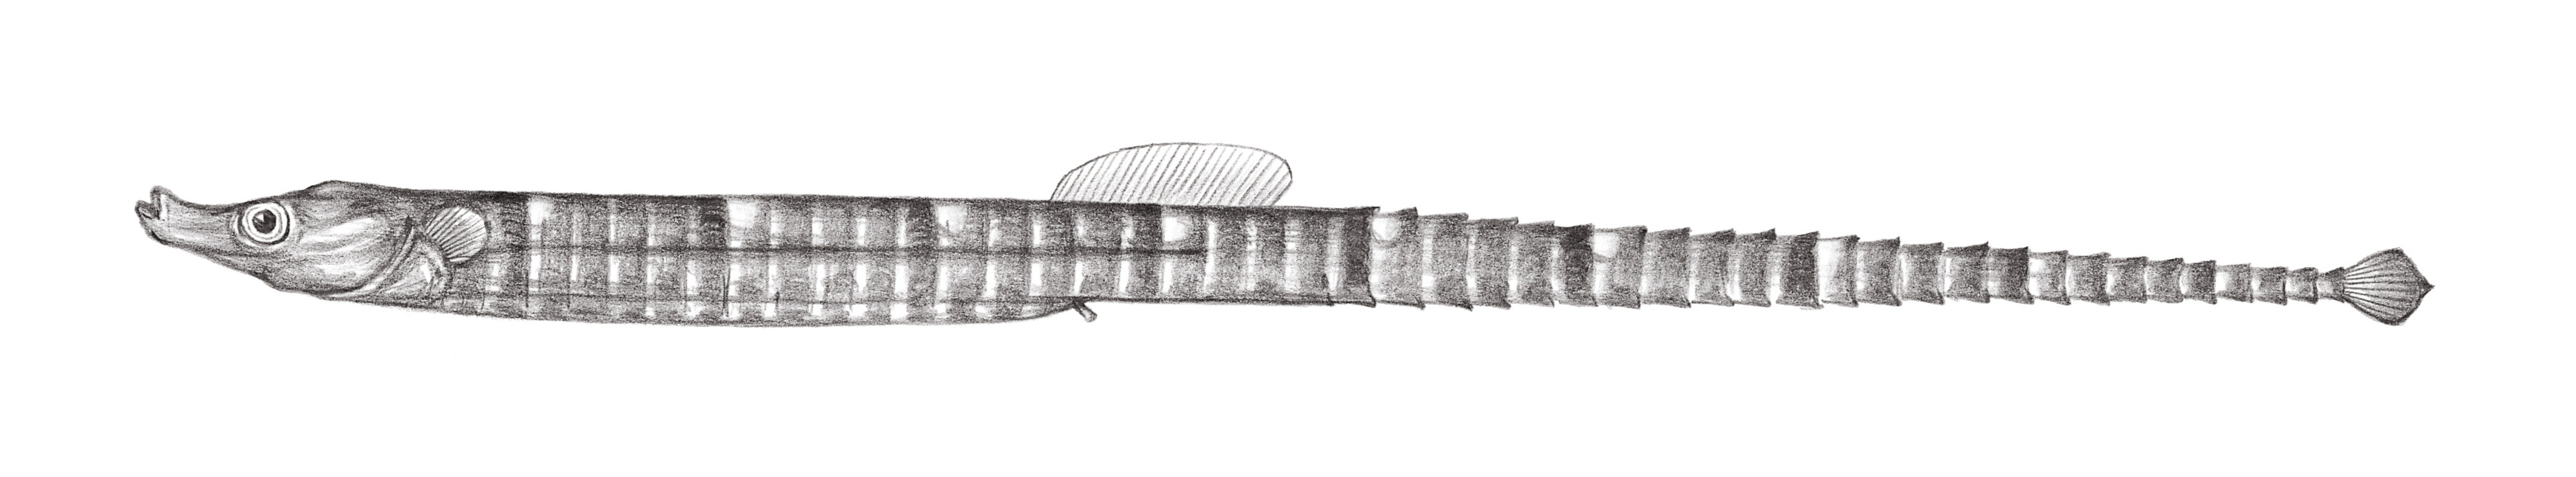 835.	黑錐海龍 Phoxocampus belcheri (Kaup, 1856)